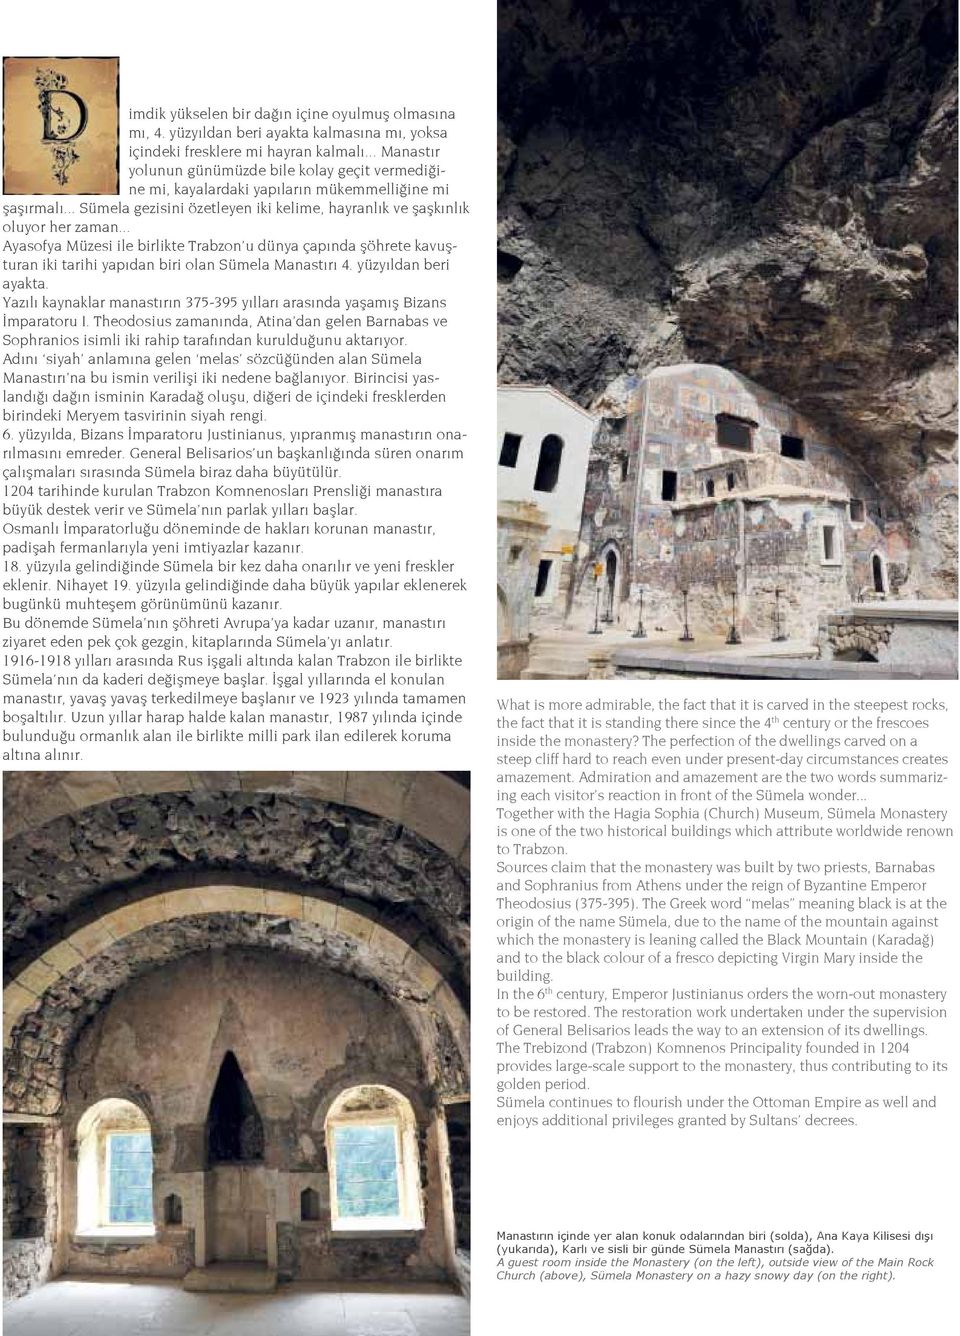 .. Ayasofya Müzesi ile birlikte Trabzon u dünya çapında şöhrete kavuşturan iki tarihi yapıdan biri olan Sümela Manastırı 4. yüzyıldan beri ayakta.